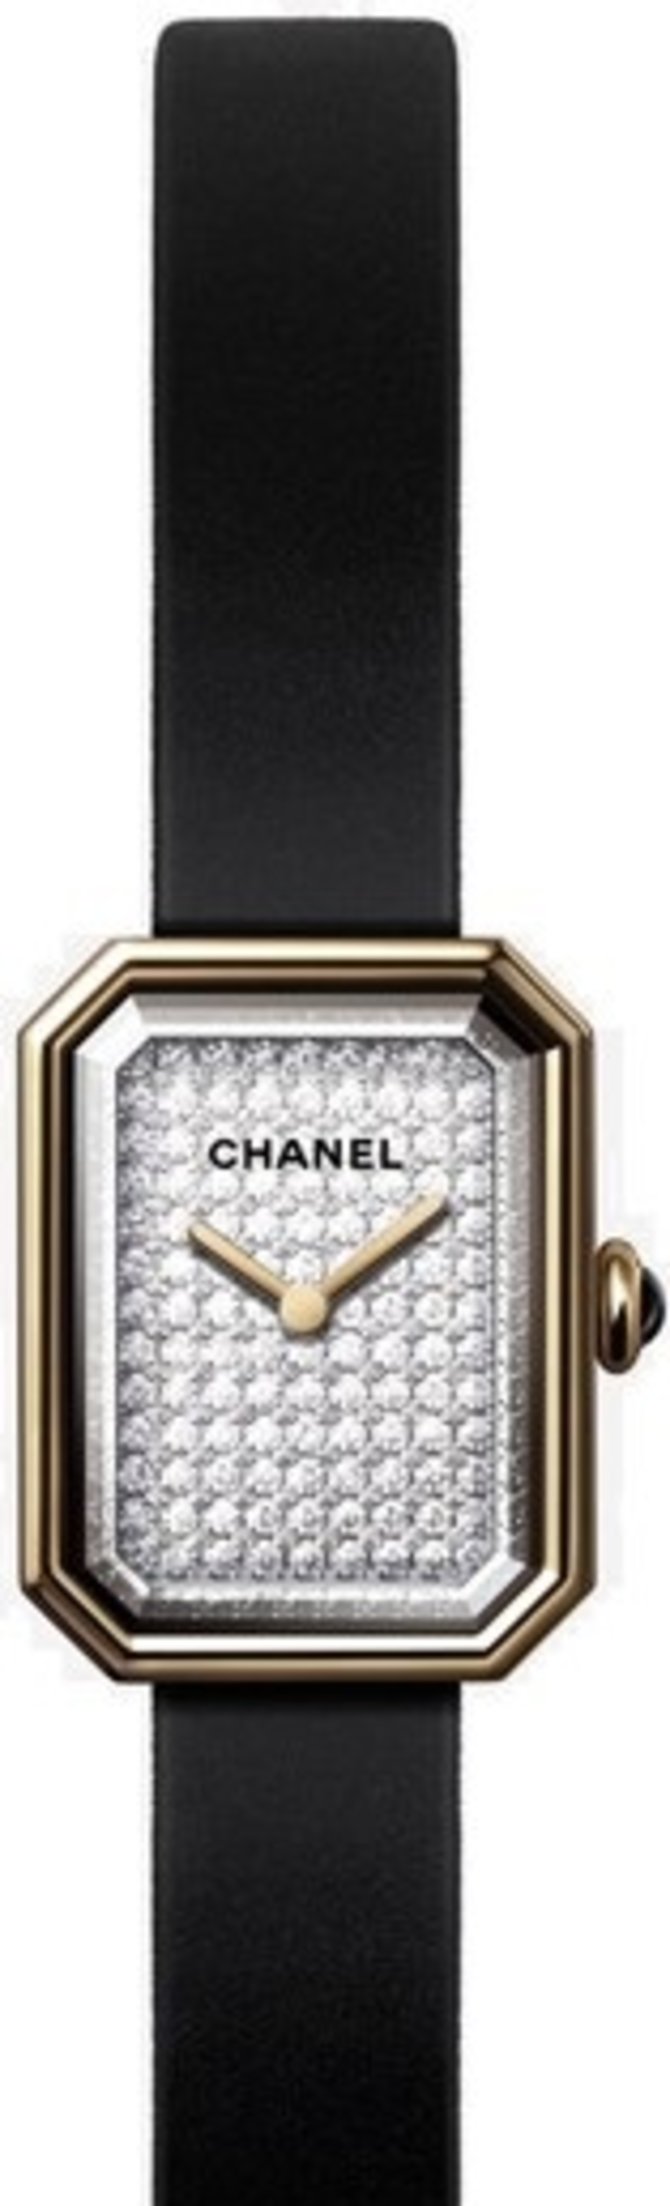 Chanel H6126 Premiere Velours